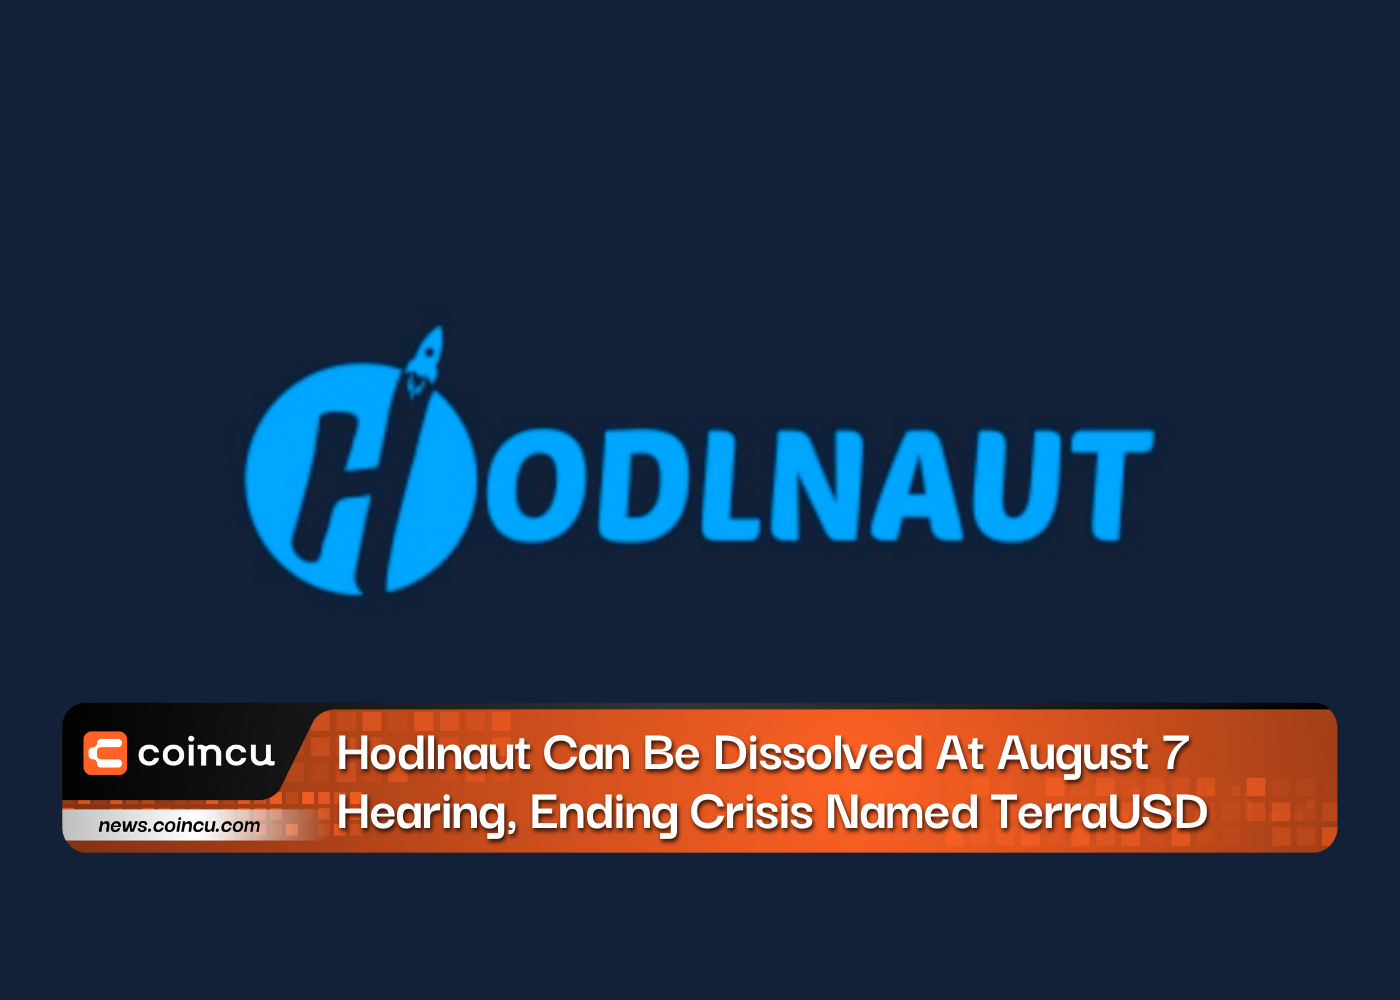 Hodlnaut 可以在 7 月 XNUMX 日的听证会上解散，结束名为 TerraUSD 的危机